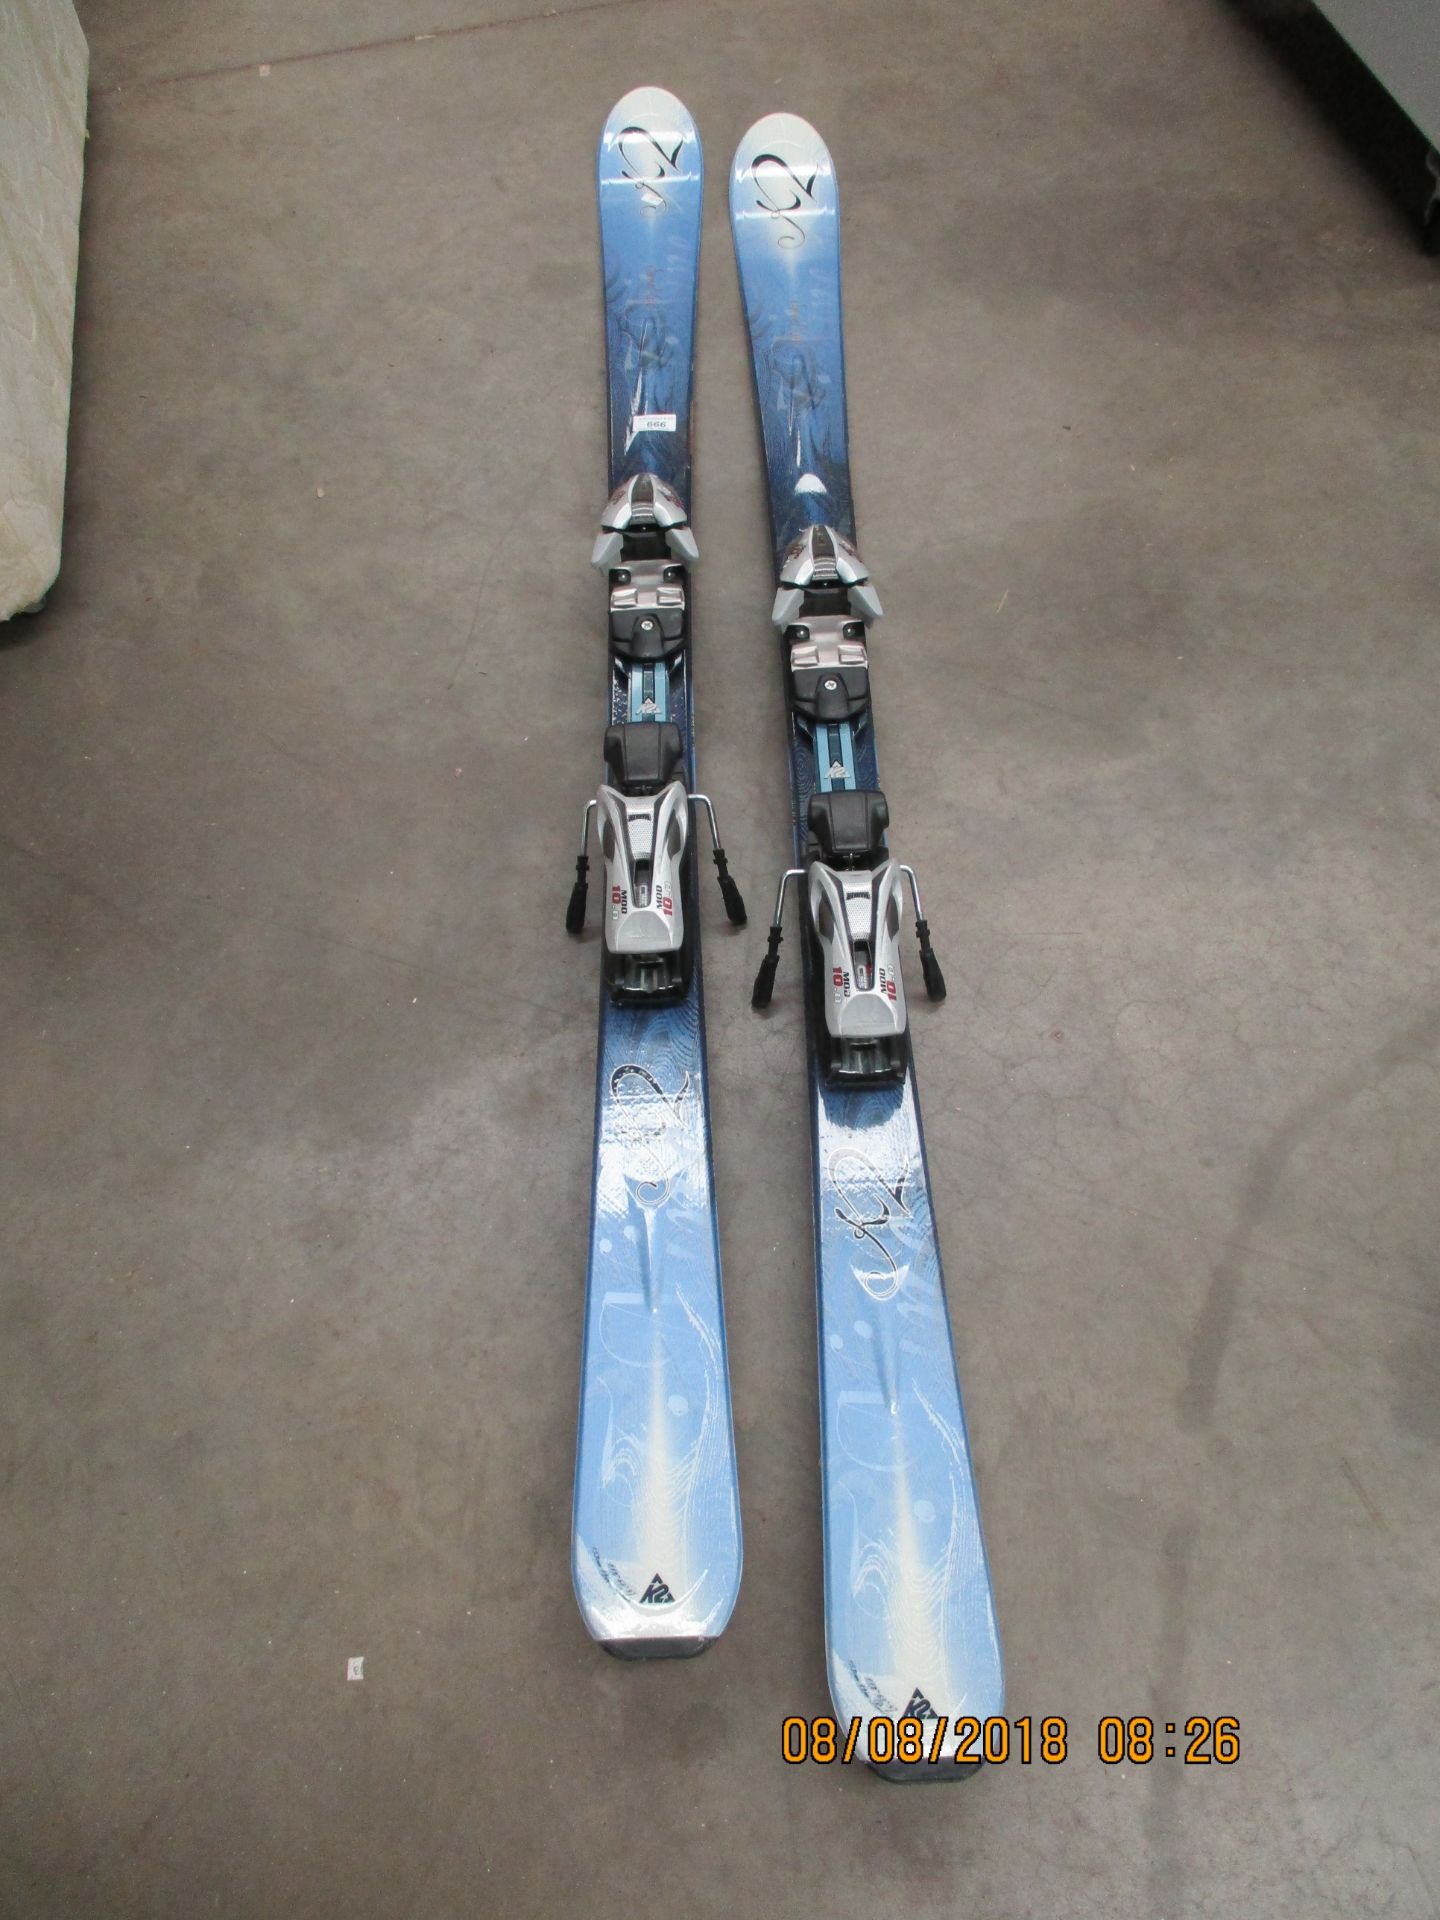 A pair of K2 'Sweet Luv' skis